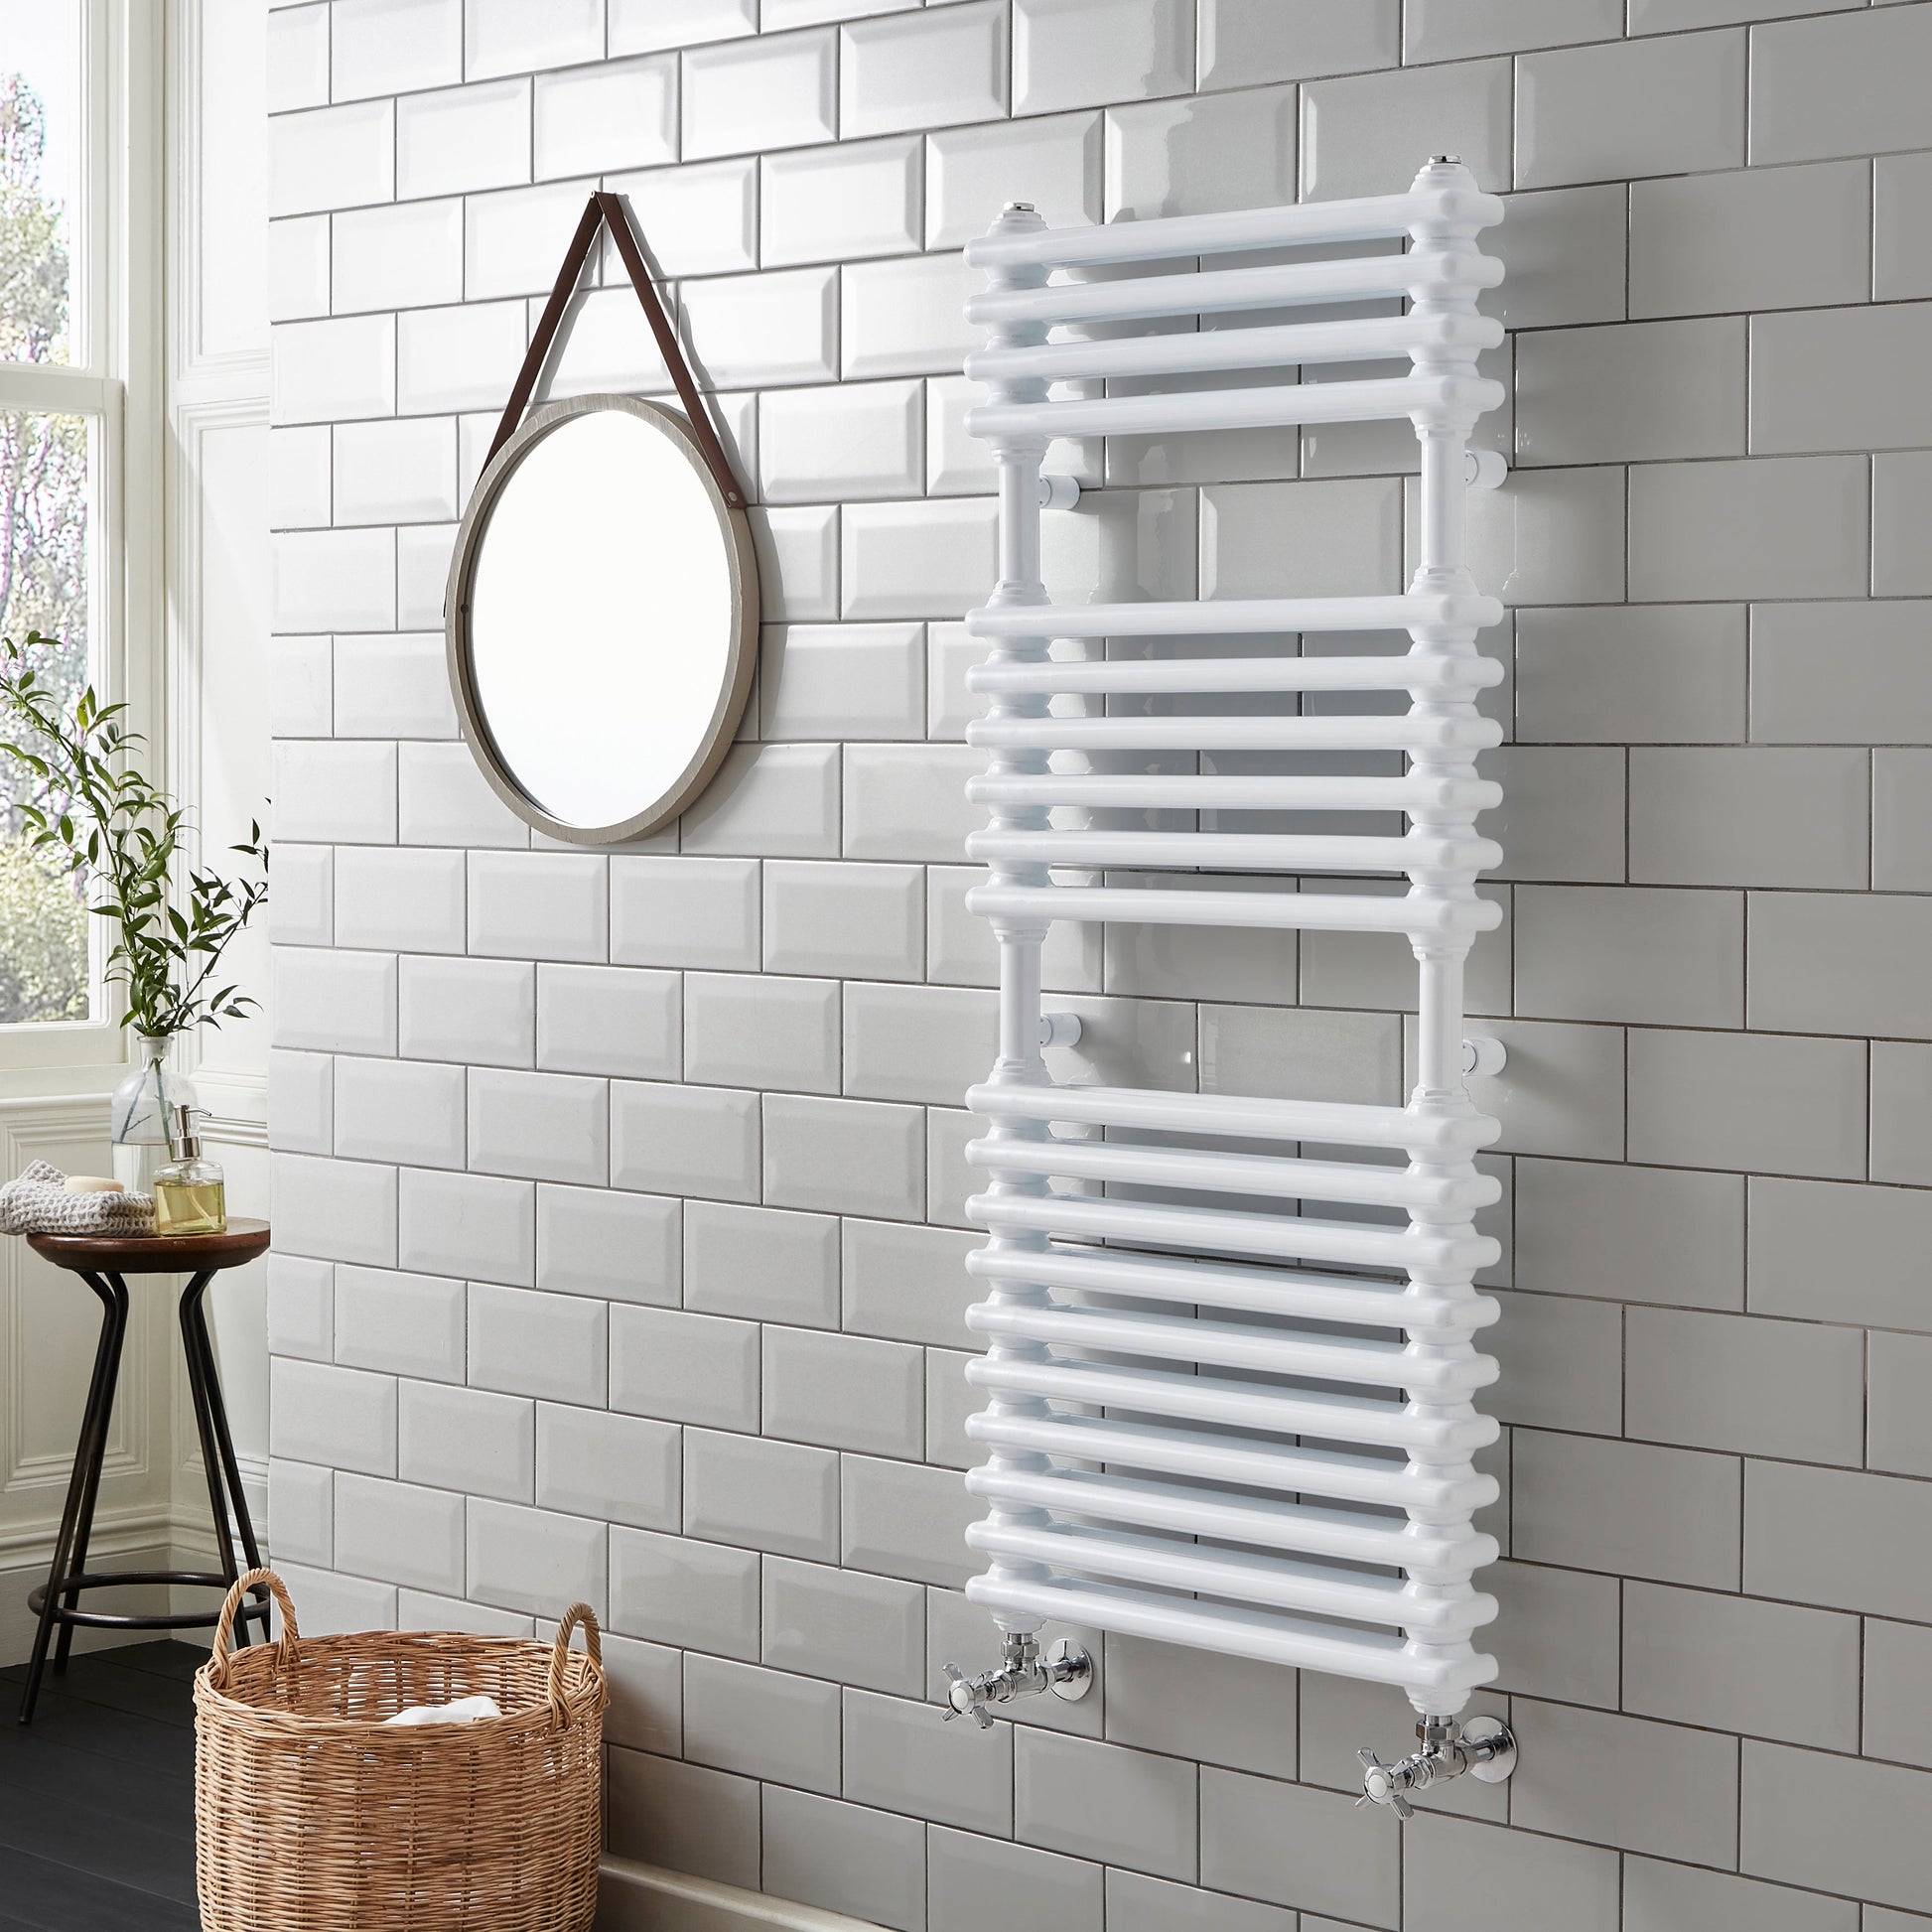 Kartell K-RAD Kolumn Towel Rail - 500 x 1140mm - White Gloss - Straight Towel Rails - Kolumn - Bliss Bathroom Supplies -